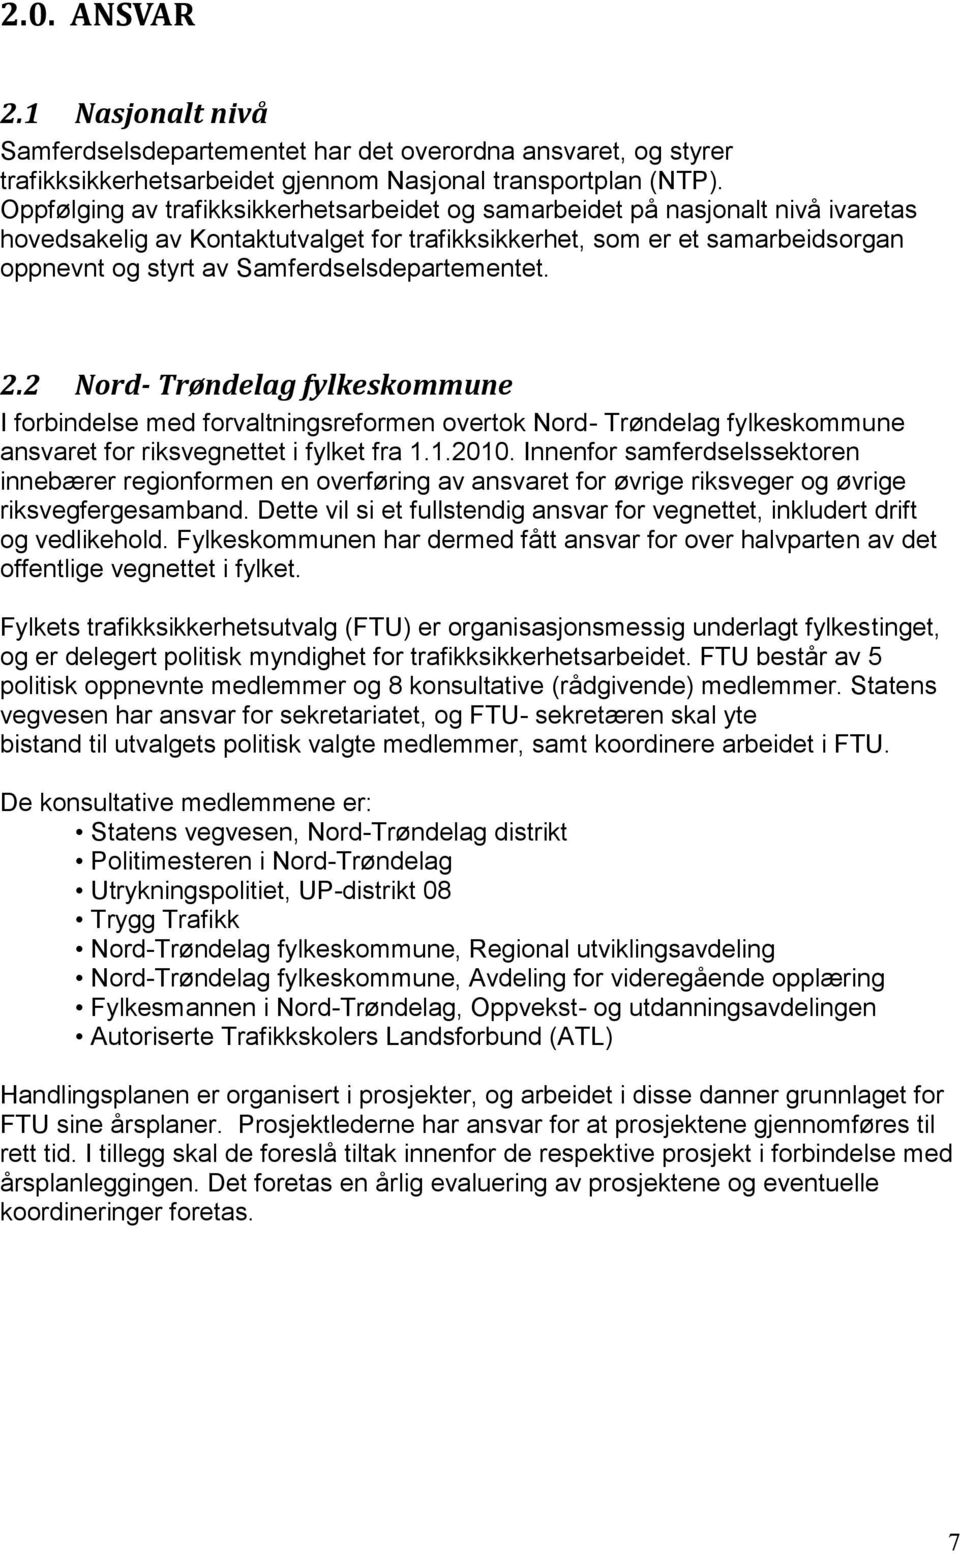 Samferdselsdepartementet. 2.2 Nord- Trøndelag fylkeskommune I forbindelse med forvaltningsreformen overtok Nord- Trøndelag fylkeskommune ansvaret for riksvegnettet i fylket fra 1.1.2010.